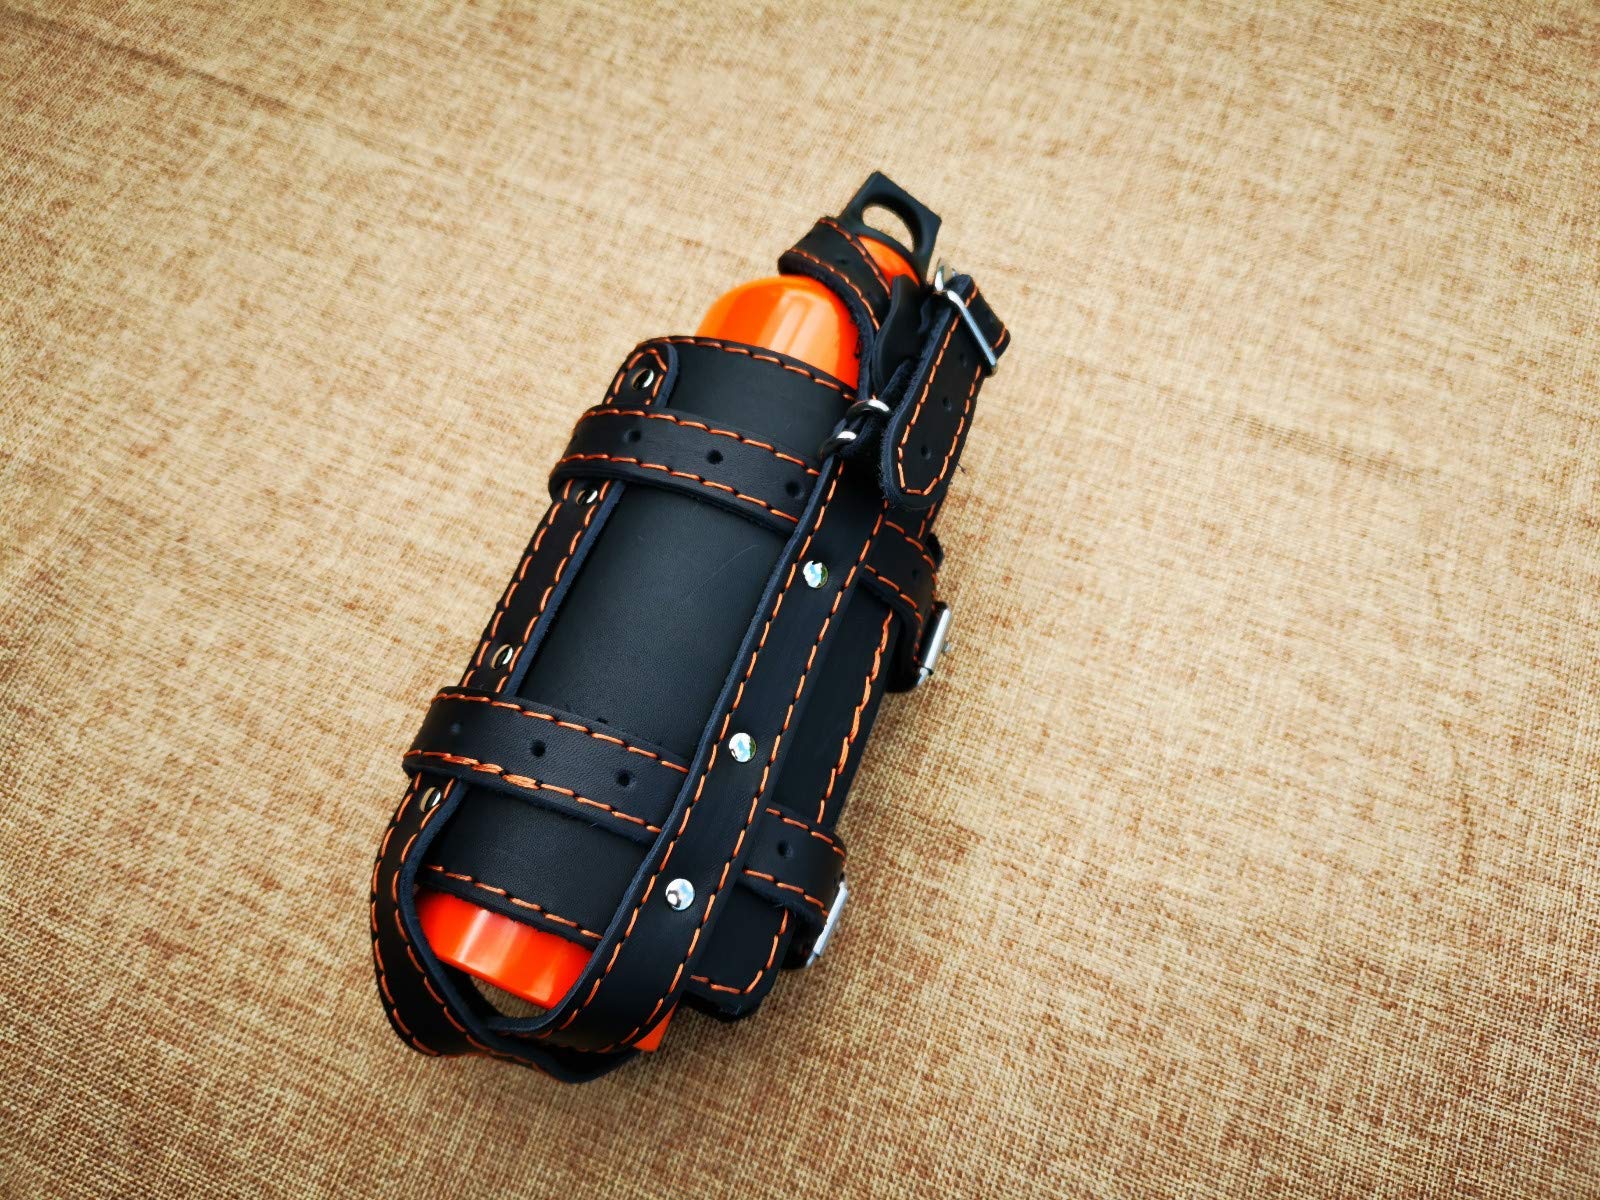 ORLETANOS Flaschen Halter kompatibel mit HD Linke Seite Sportster Flaschenhalter Harley Davidson Design schwarz orange nähte getränkehalter Schwingentasche Satteltasche Rahmen Leder von ORLETANOS